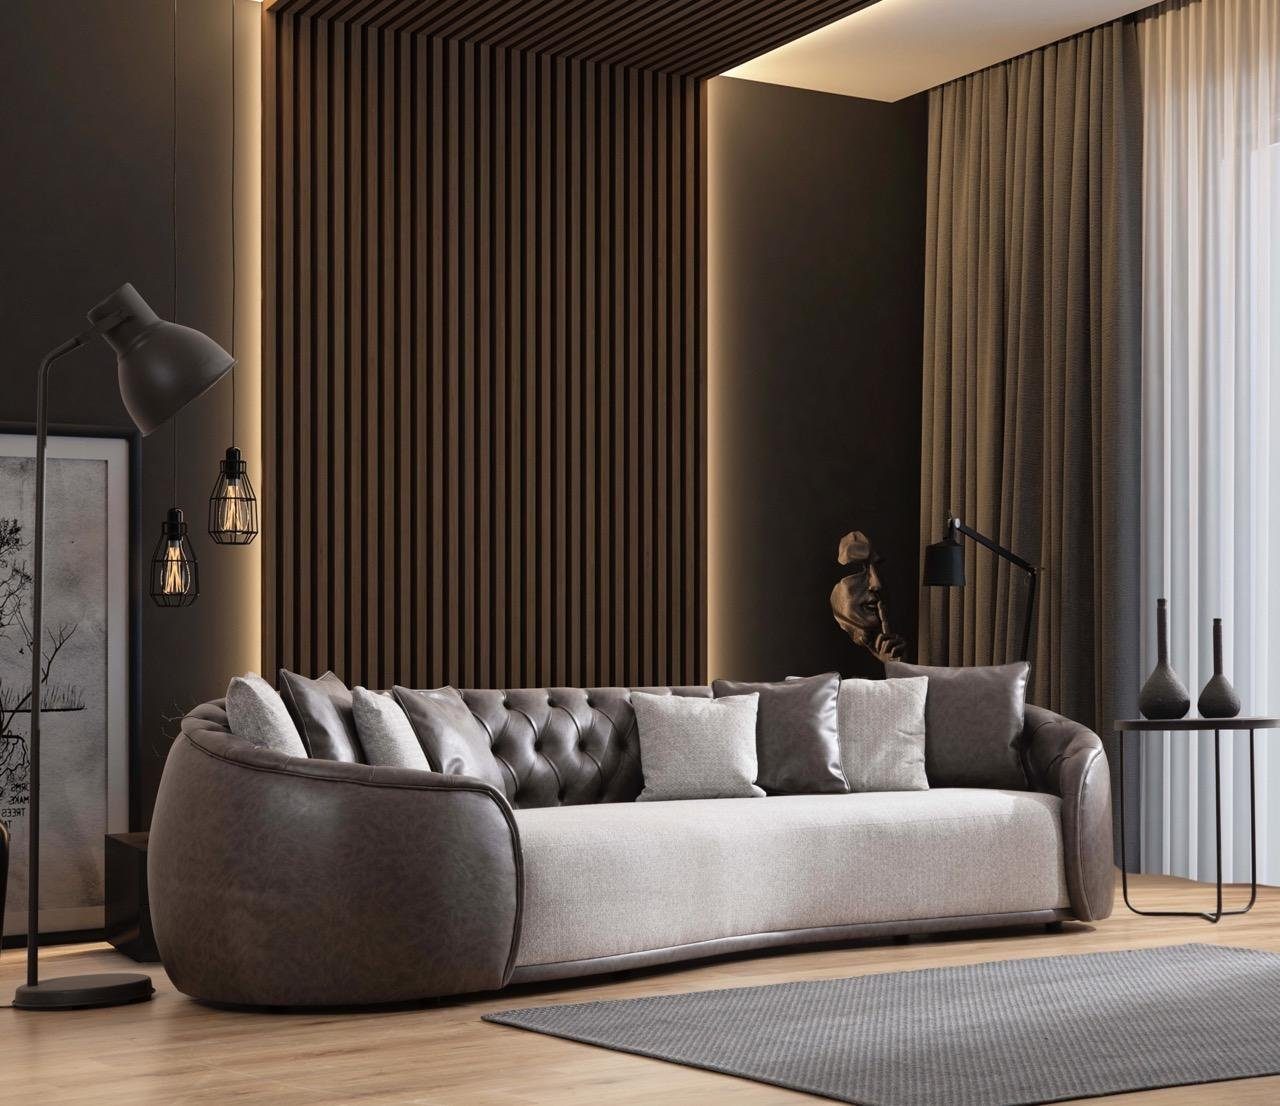 JVmoebel Sofa Luxus Sofa 3 Sitzer Wohnzimmer Kanzlei Möbel, Made in Europe